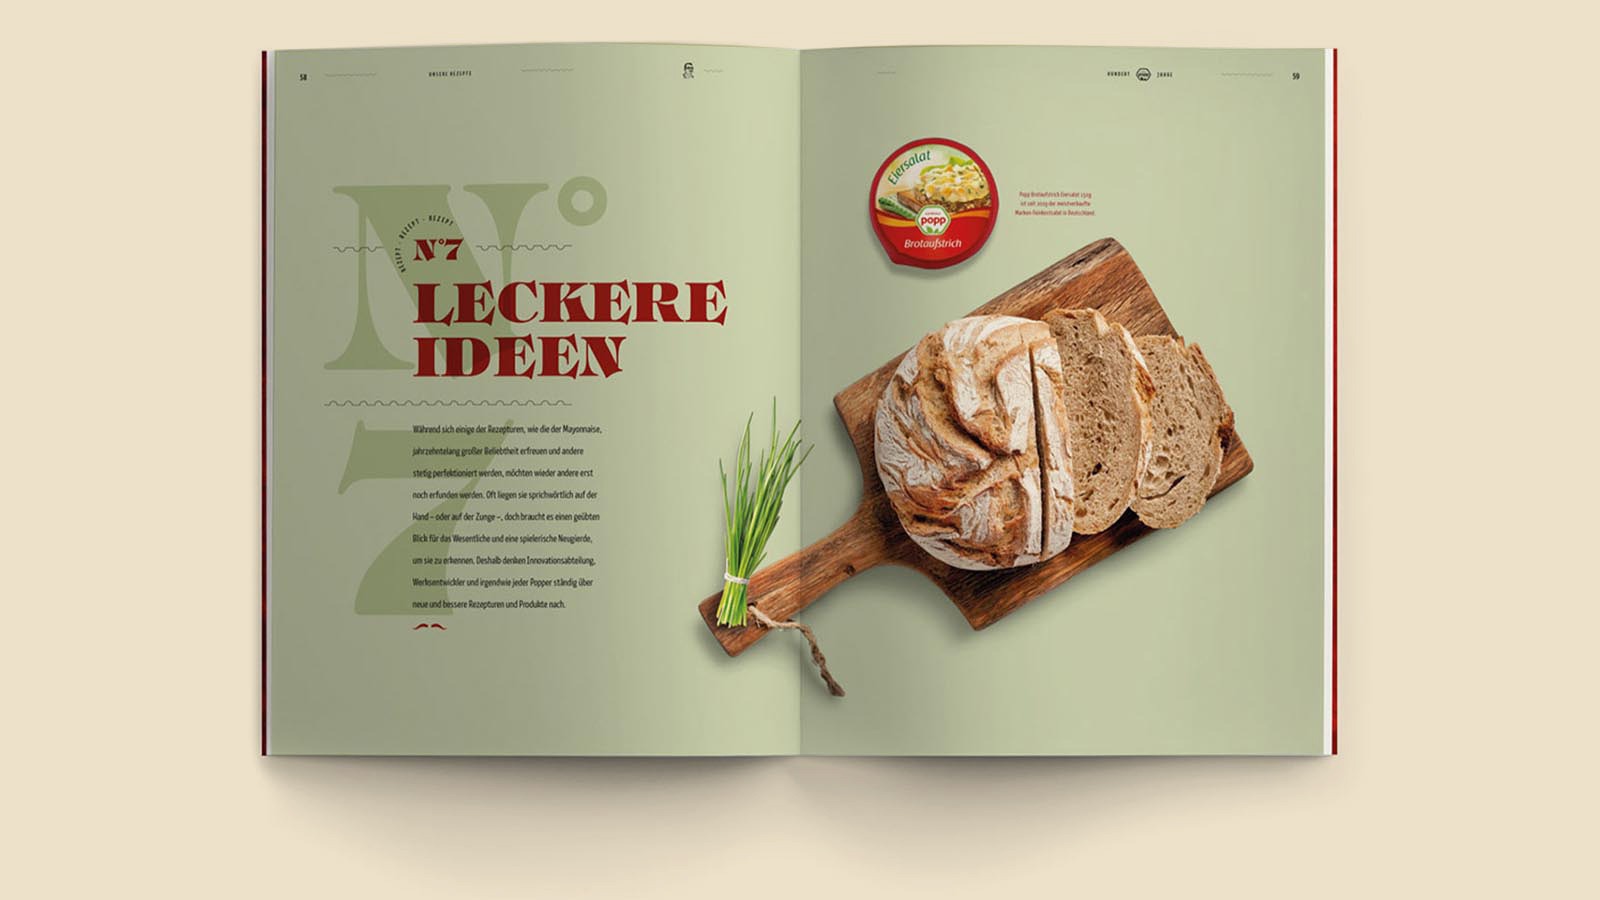 Eine grüne Innenseite mit Textinhalt auf der linken Seite und einer Fotografie eines Brotes mit Popp Brotaufstrich auf der rechten Seite.